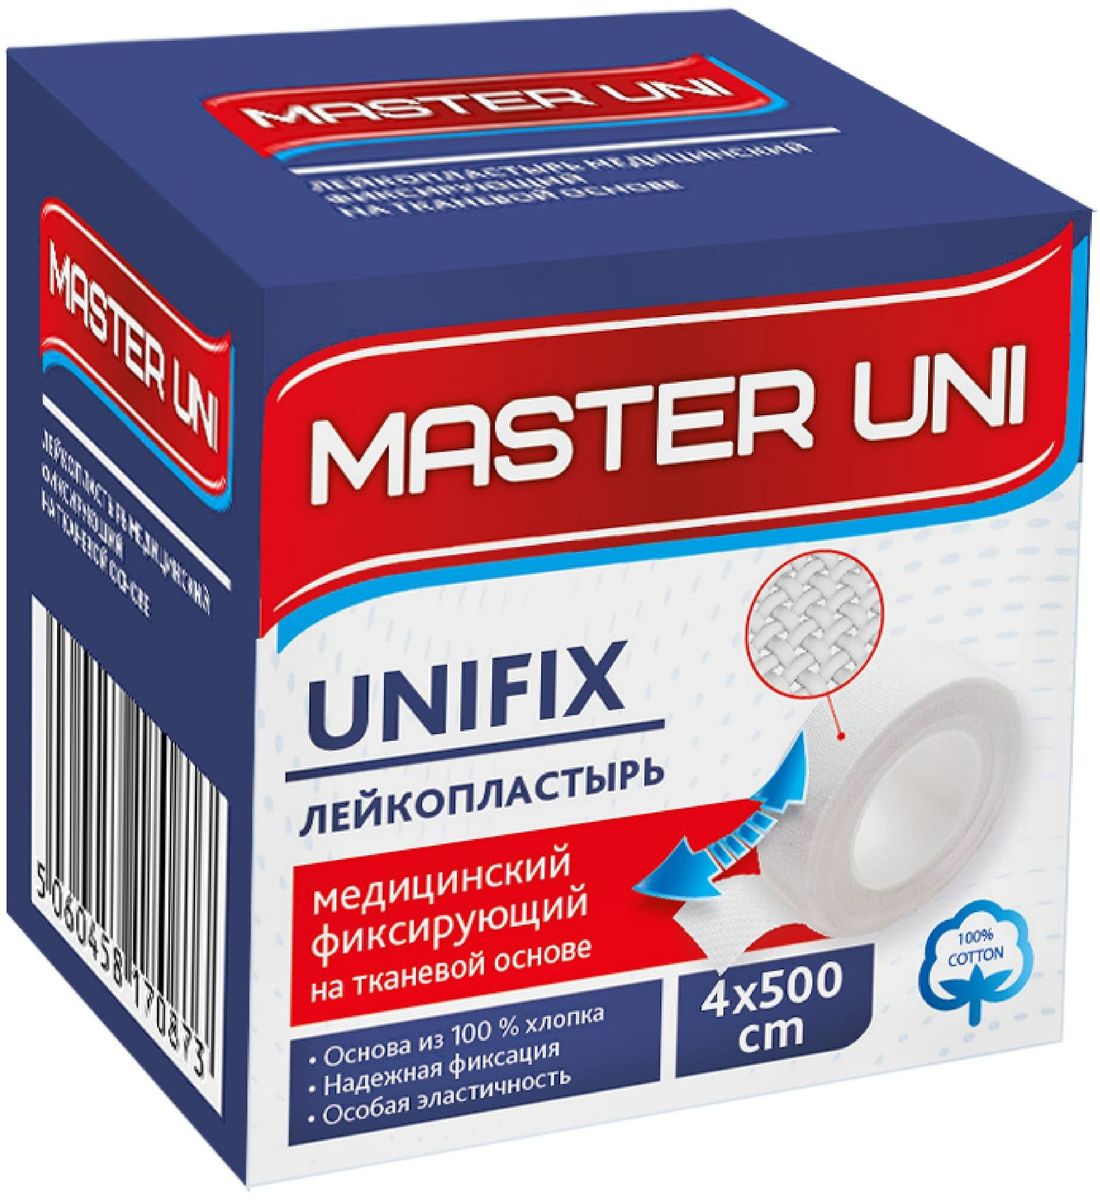 Master Uni Unifix Лейкопластырь фиксирующий, 4 х 500 см, тканевая основа